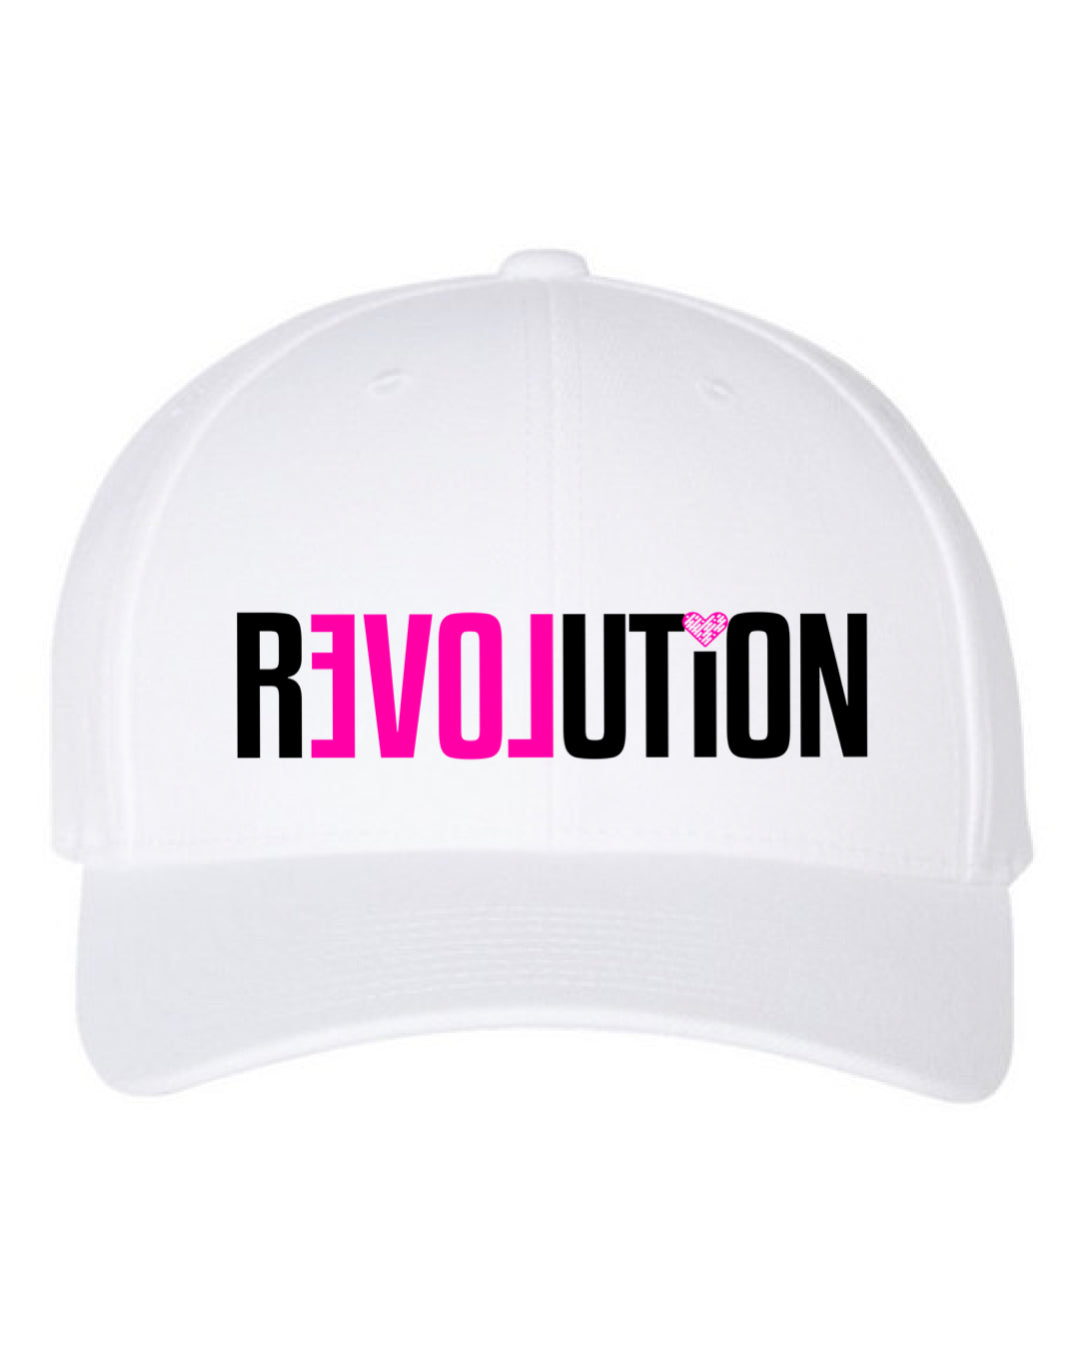 REVOLUTION Snap Back Hats